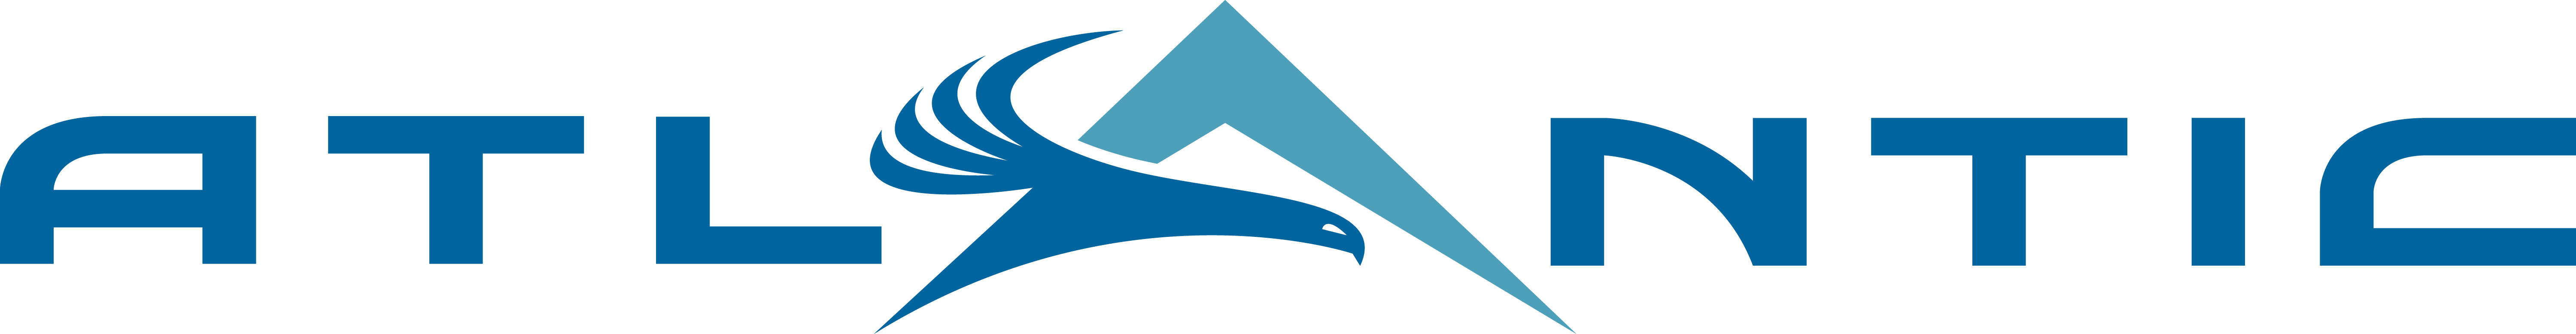 Atlantic Logo - Atlantic Aviation - Media Kit and Company Assets